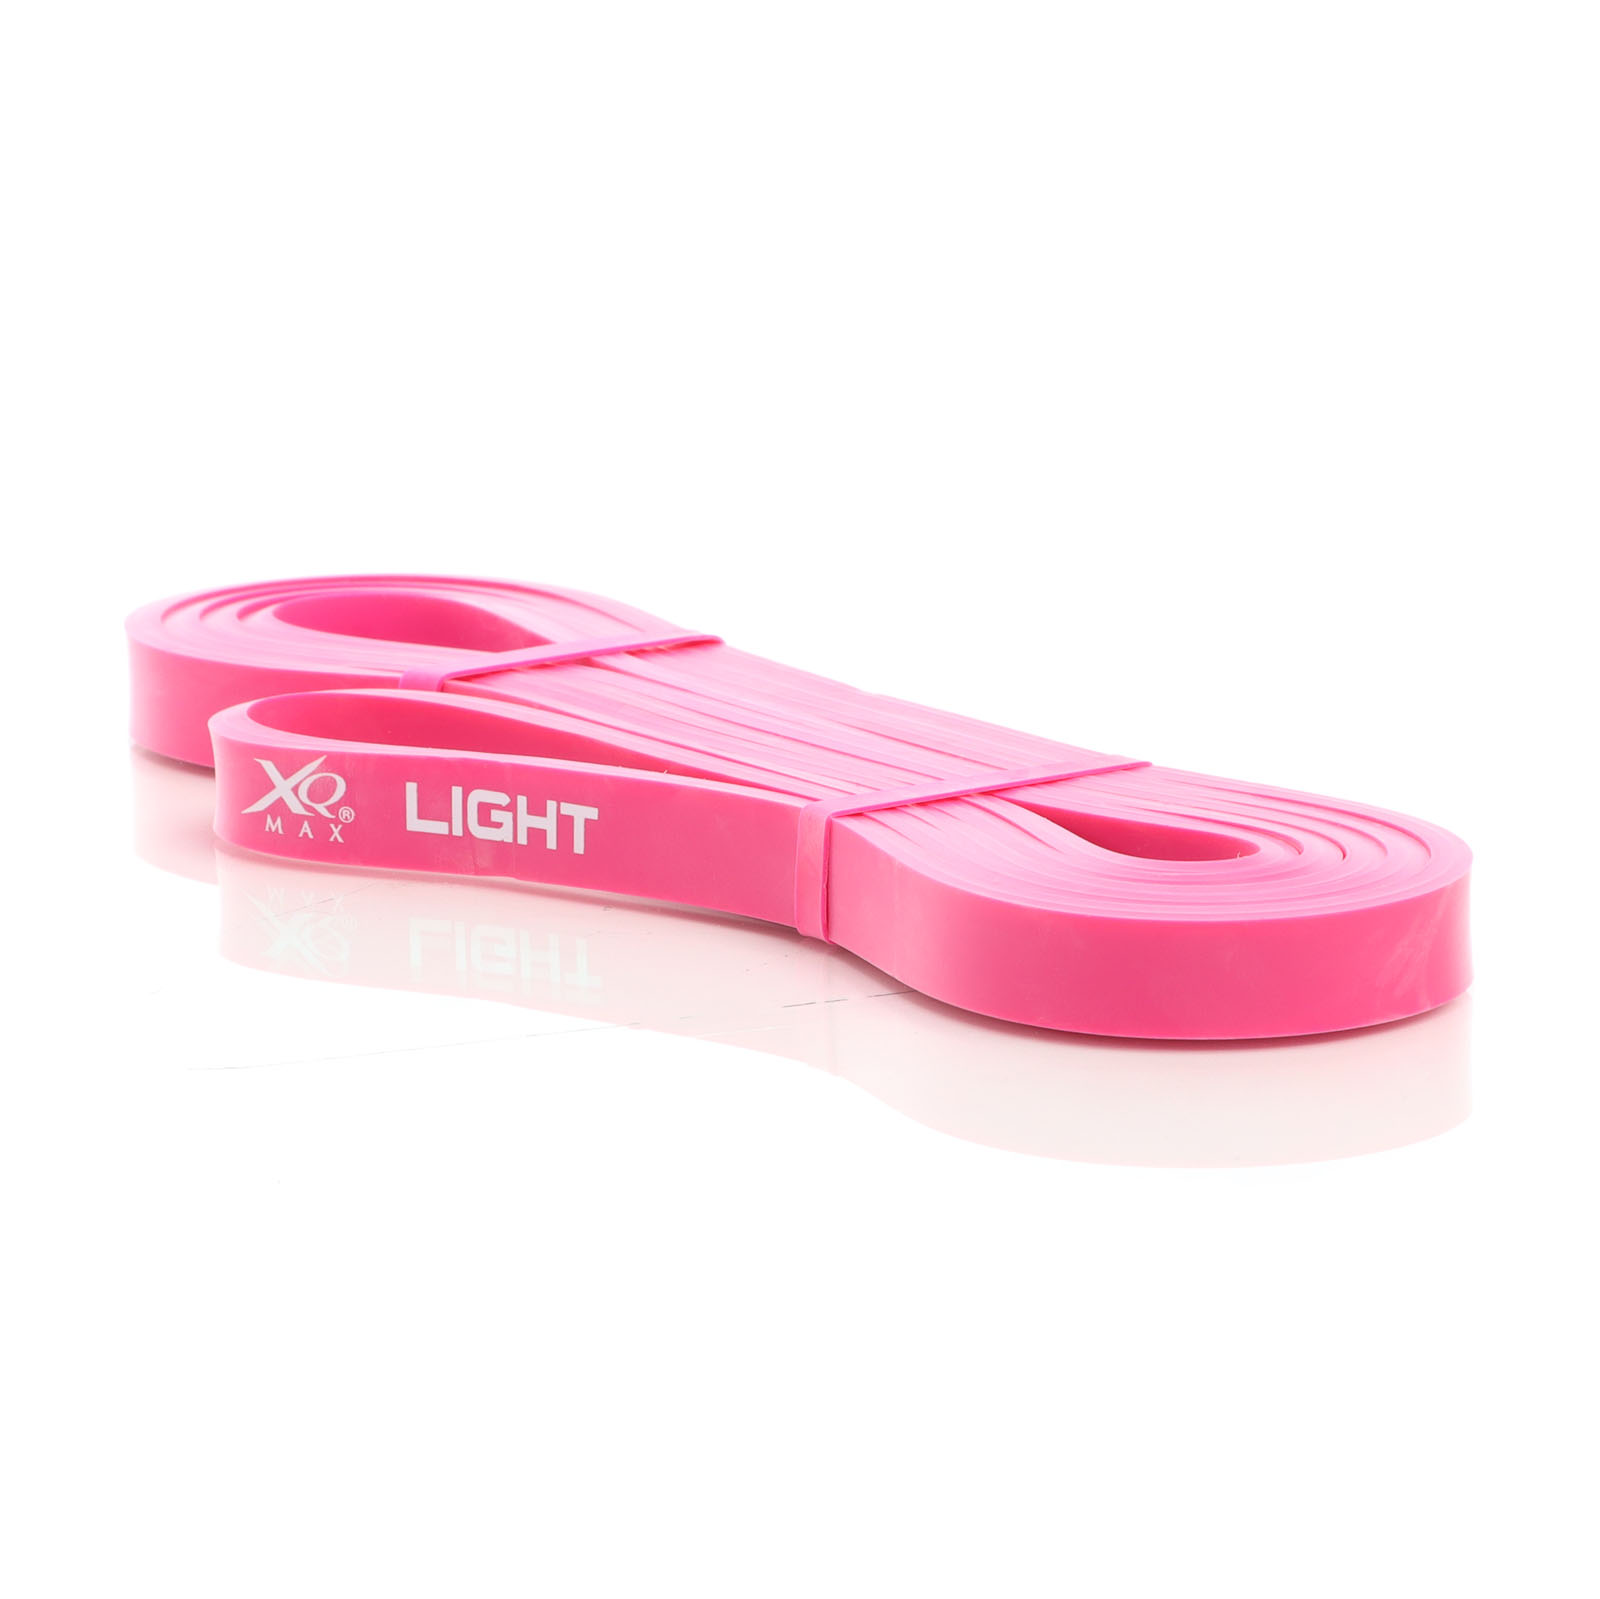 LUXTRI Fitnessband mit Widerstandsstärke light 100% Latex in Pink